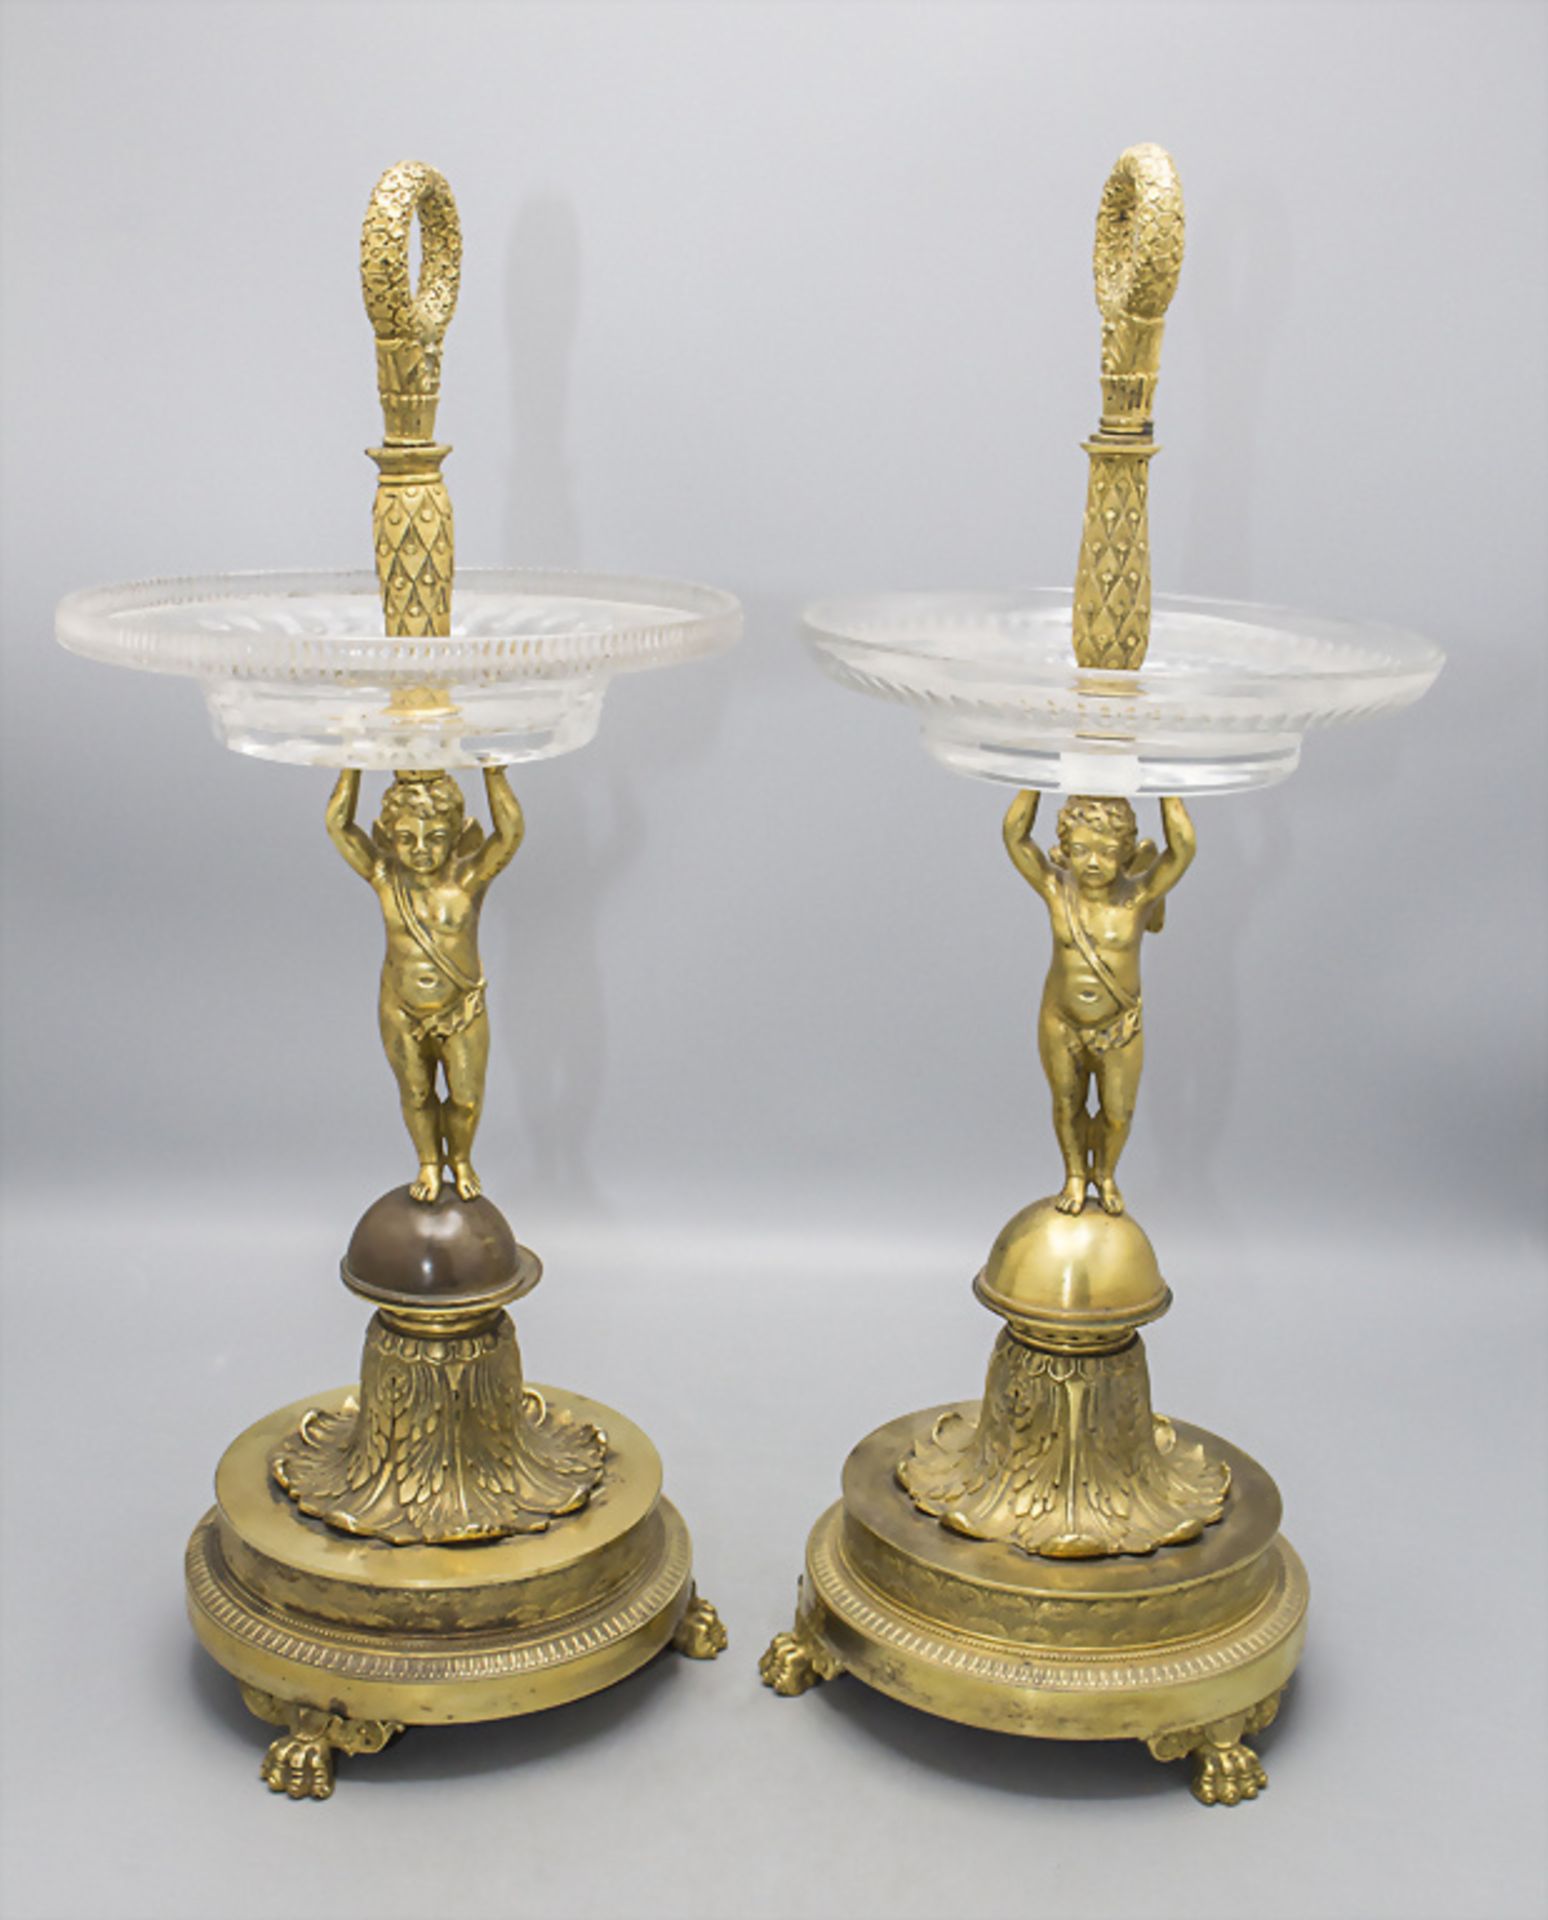 Paar Bronze Tafelaufsätze 'Amorette' / A pair of bronze centerpieces 'Armor', Paris, um 1830